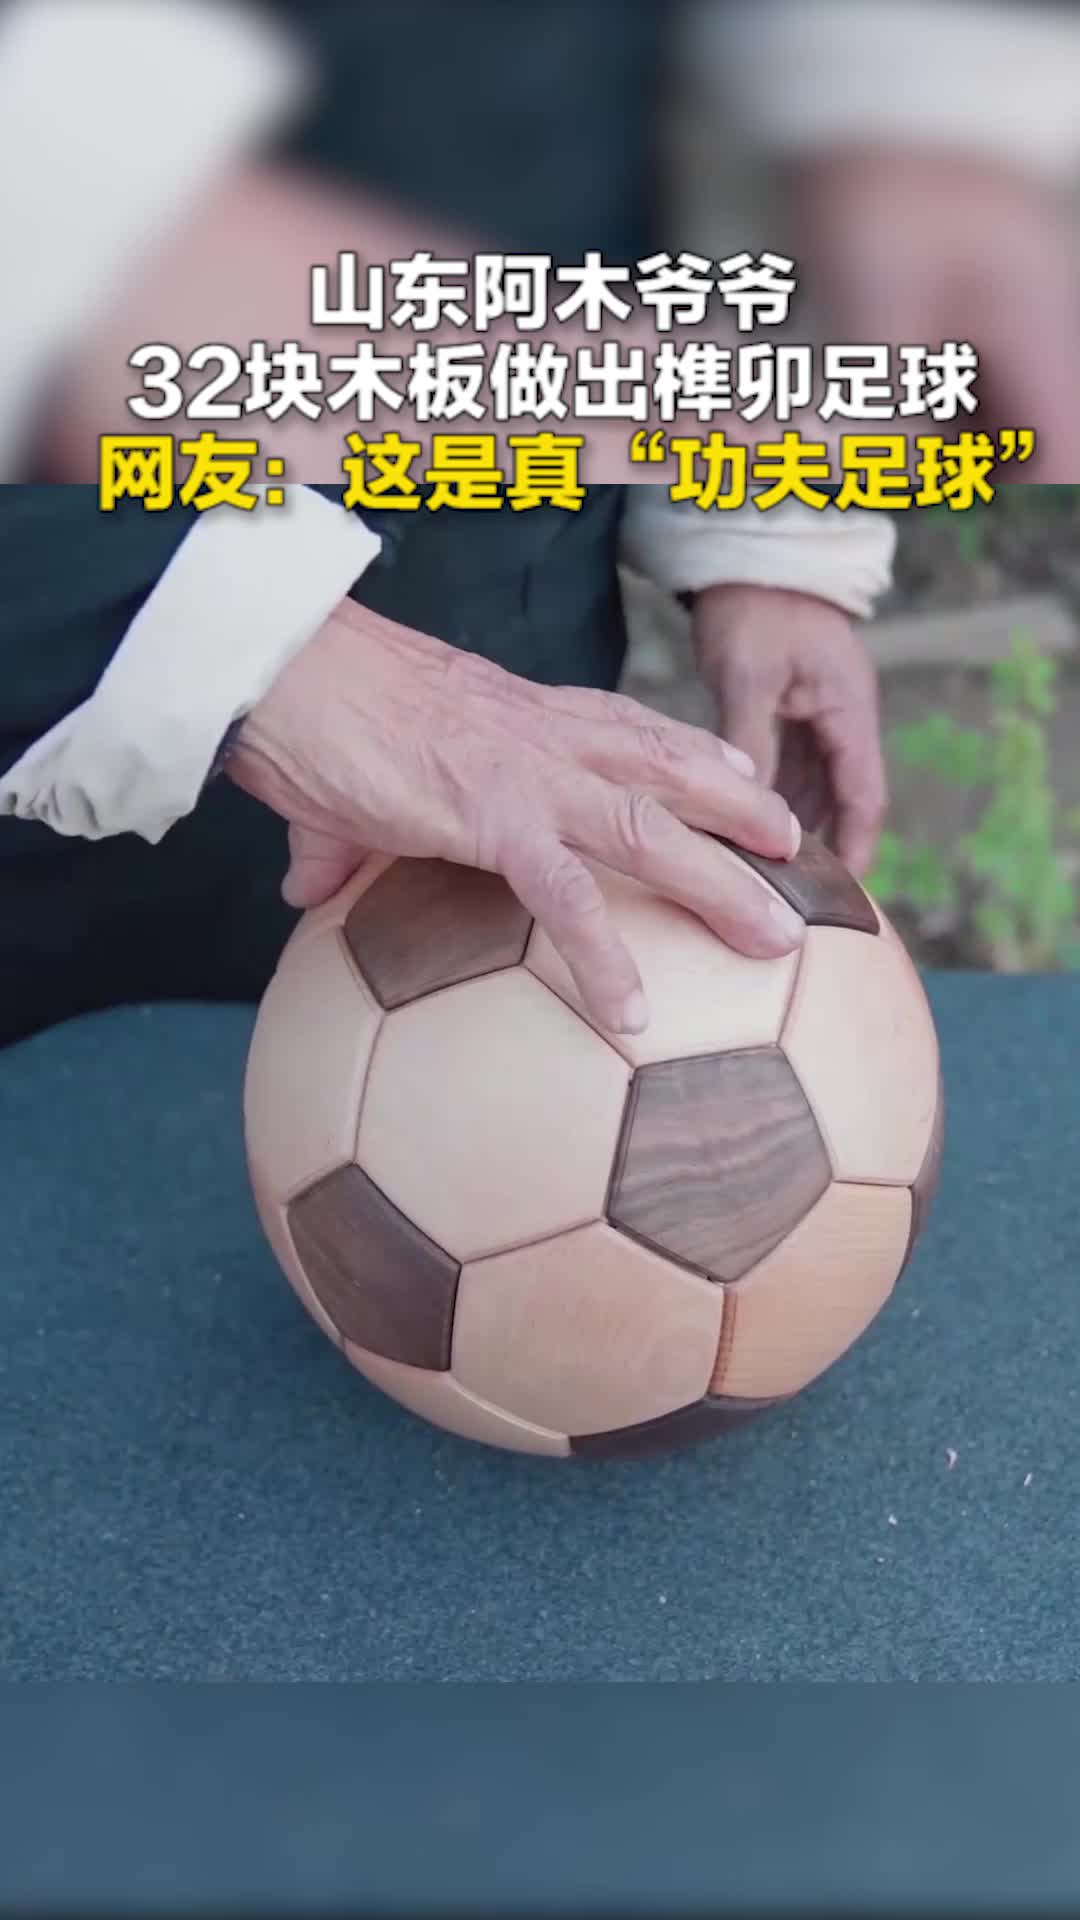 山东阿木爷爷32块木板做出榫卯足球 网友：这是真“功夫足球”